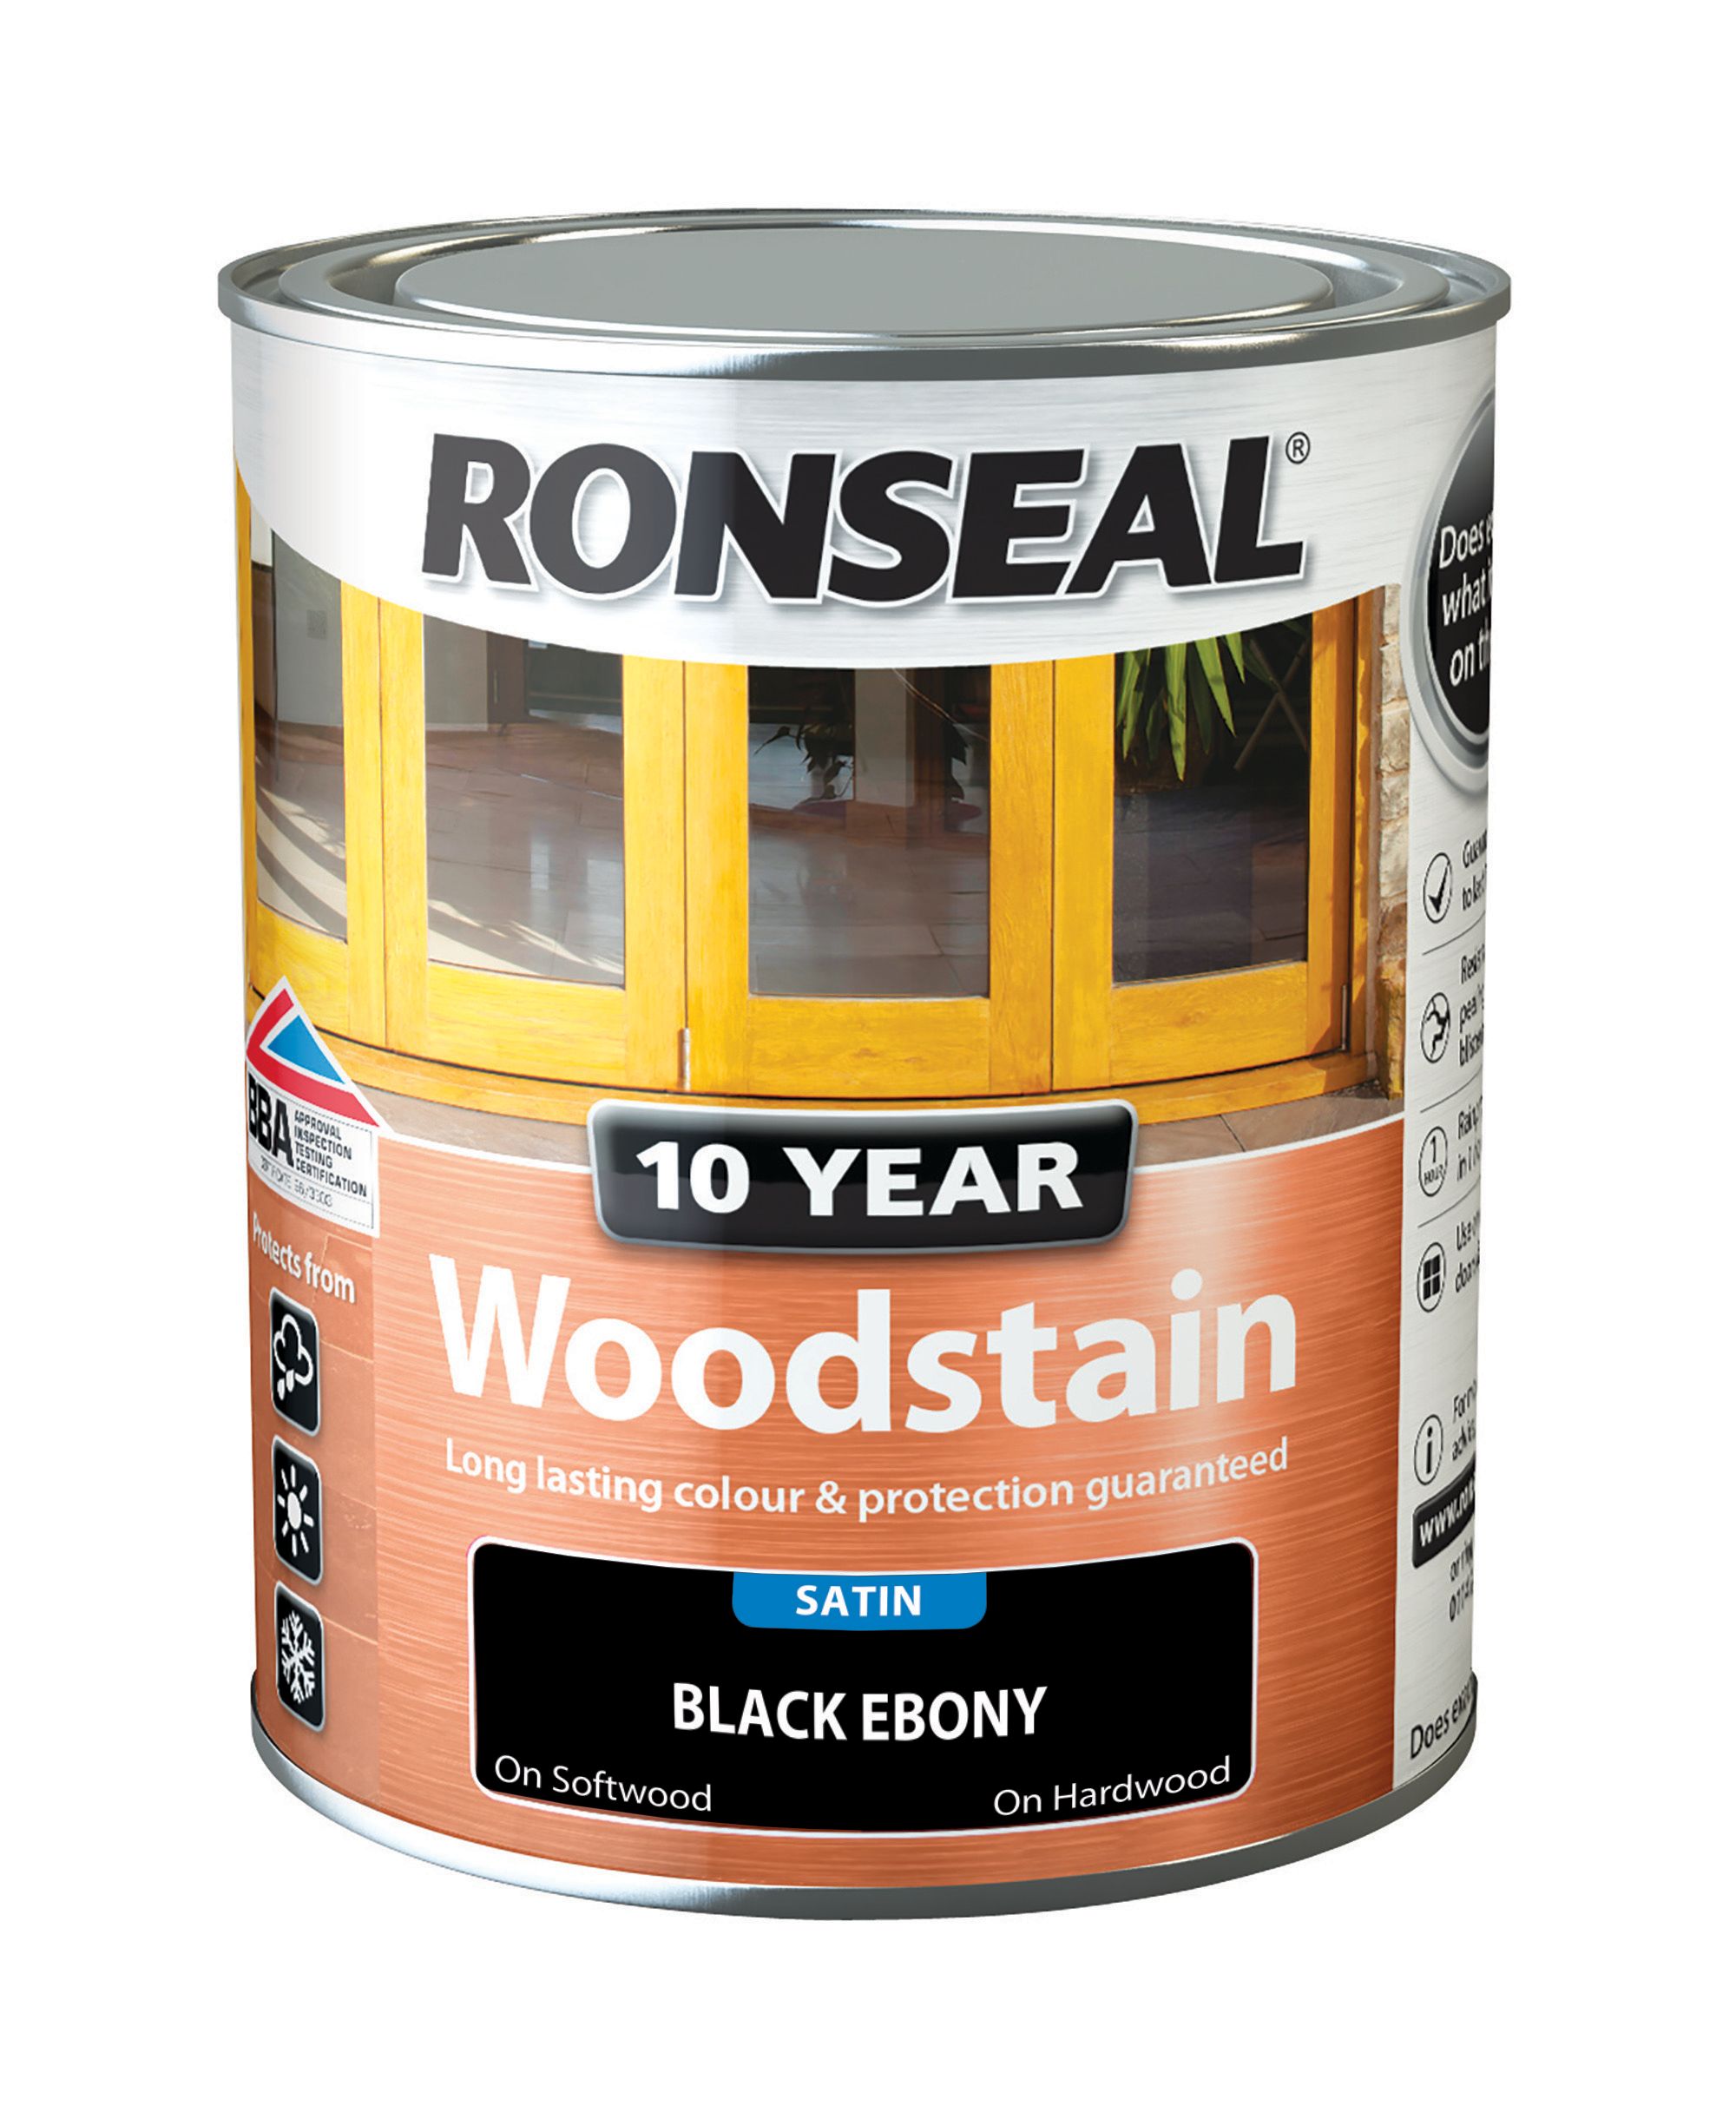 Ronseal 10 Year Woodstain - Black Ebony - 750ml